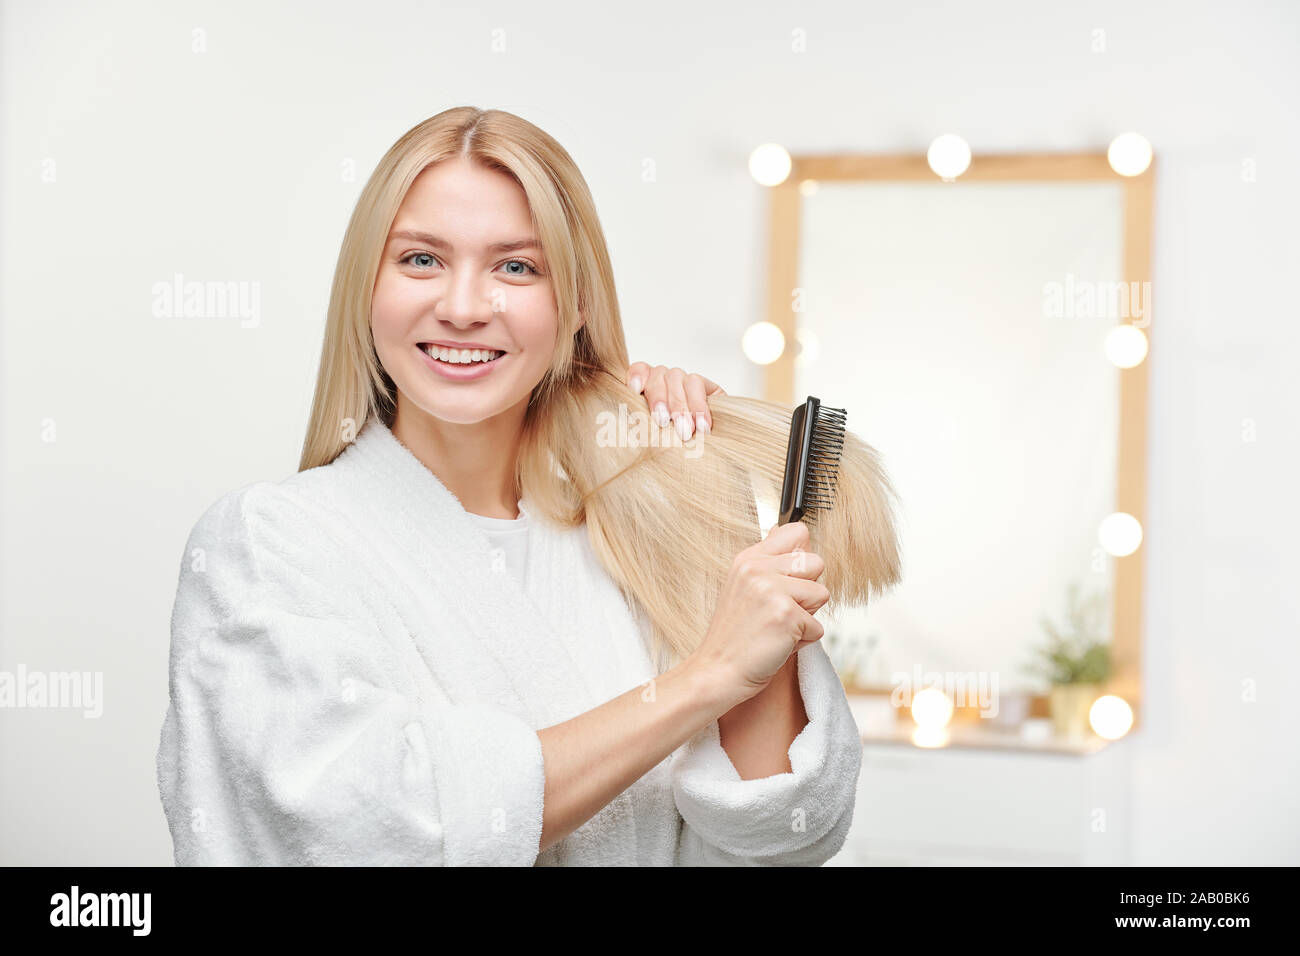 Heureux et en santé, jeune femme avec le sourire à pleines dents brosser ses longs cheveux blonds Banque D'Images